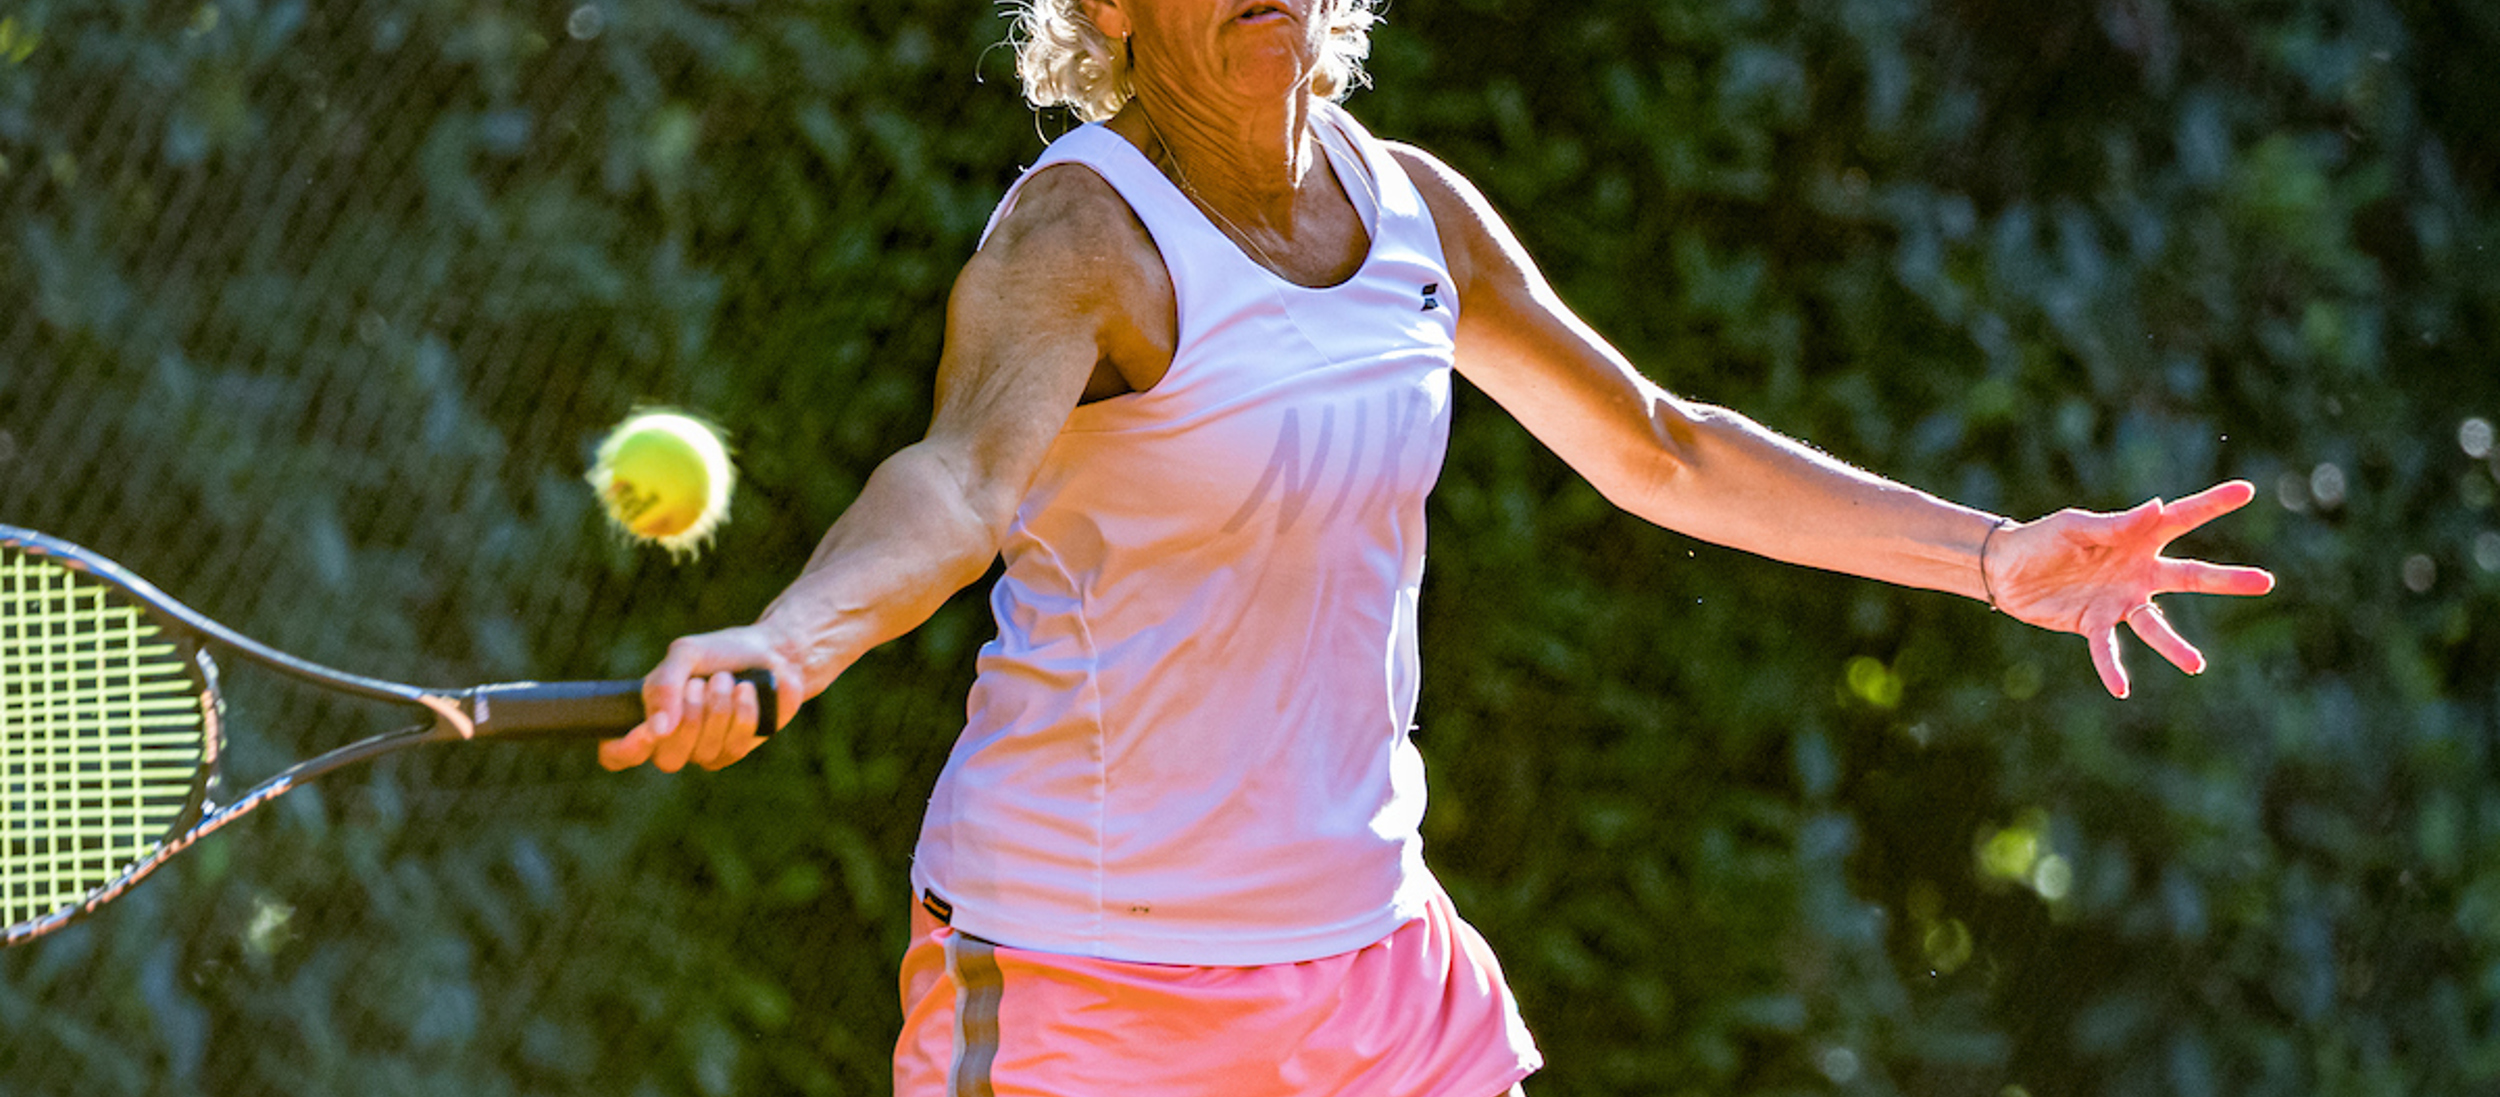 Vrouw in actie tijdens tenniswedstrijd